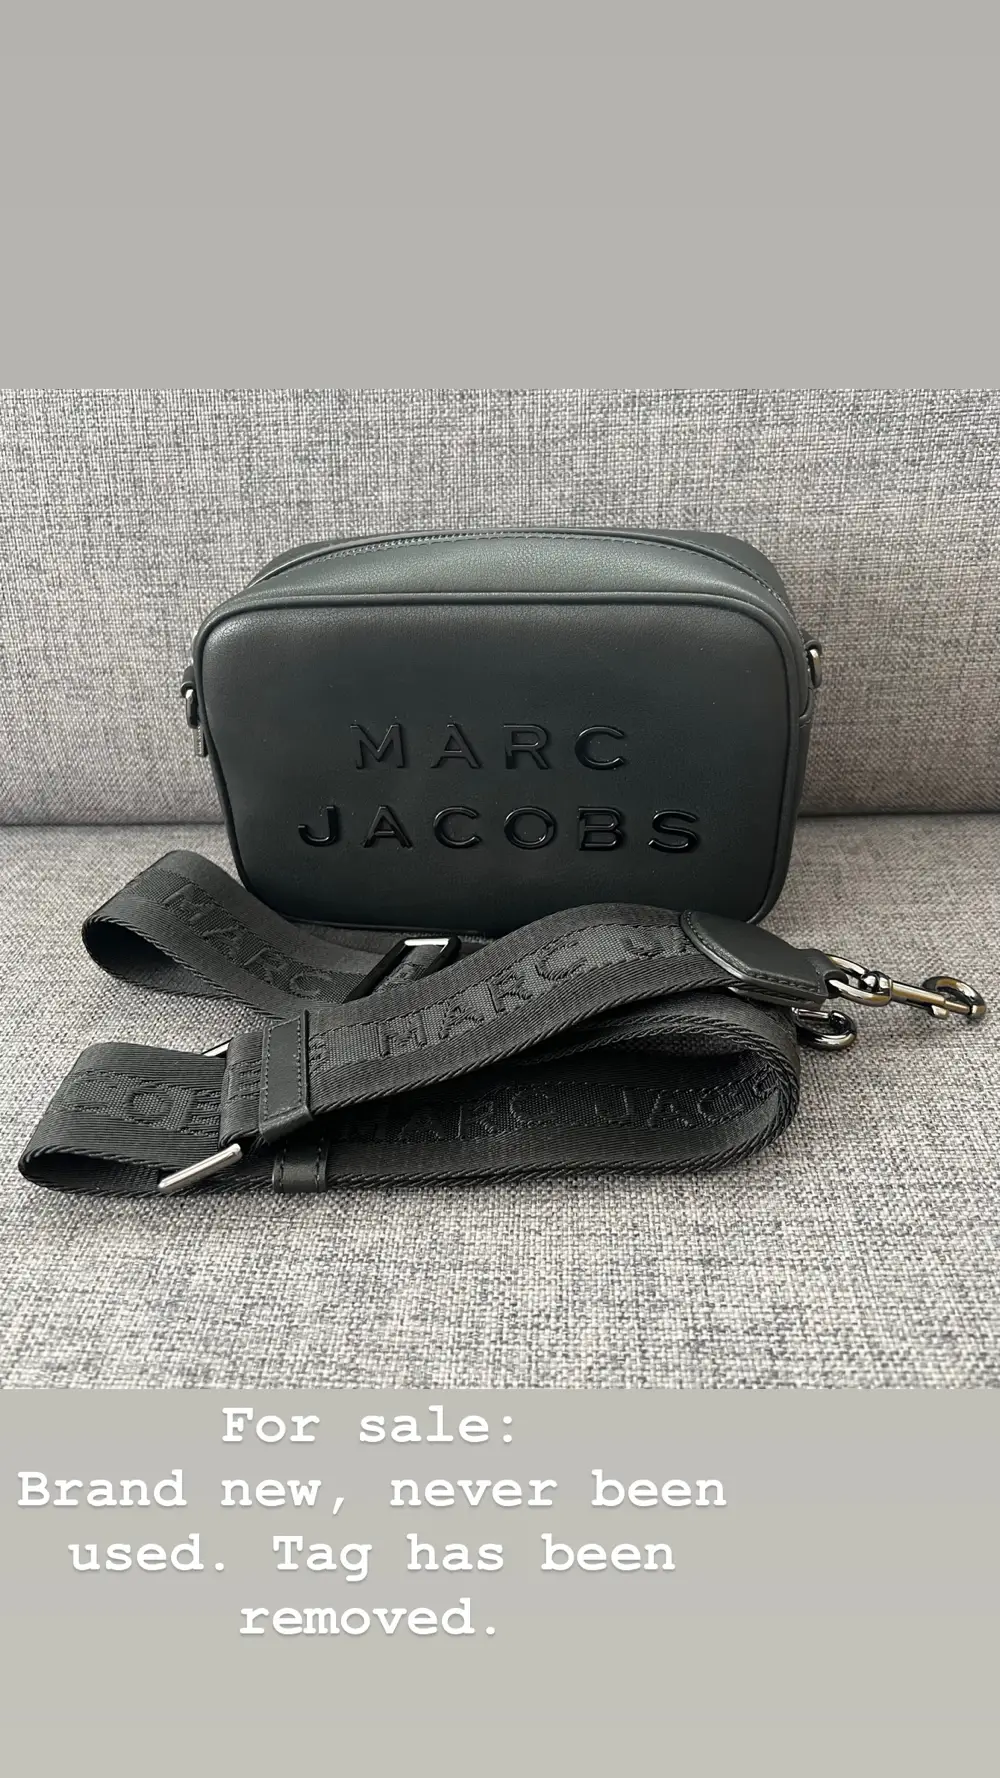 Lår vitalitet regnskyl Køb Marc Jacobs Crossbody taske af Marie på Reshopper · Shop secondhand til  børn, mor og bolig